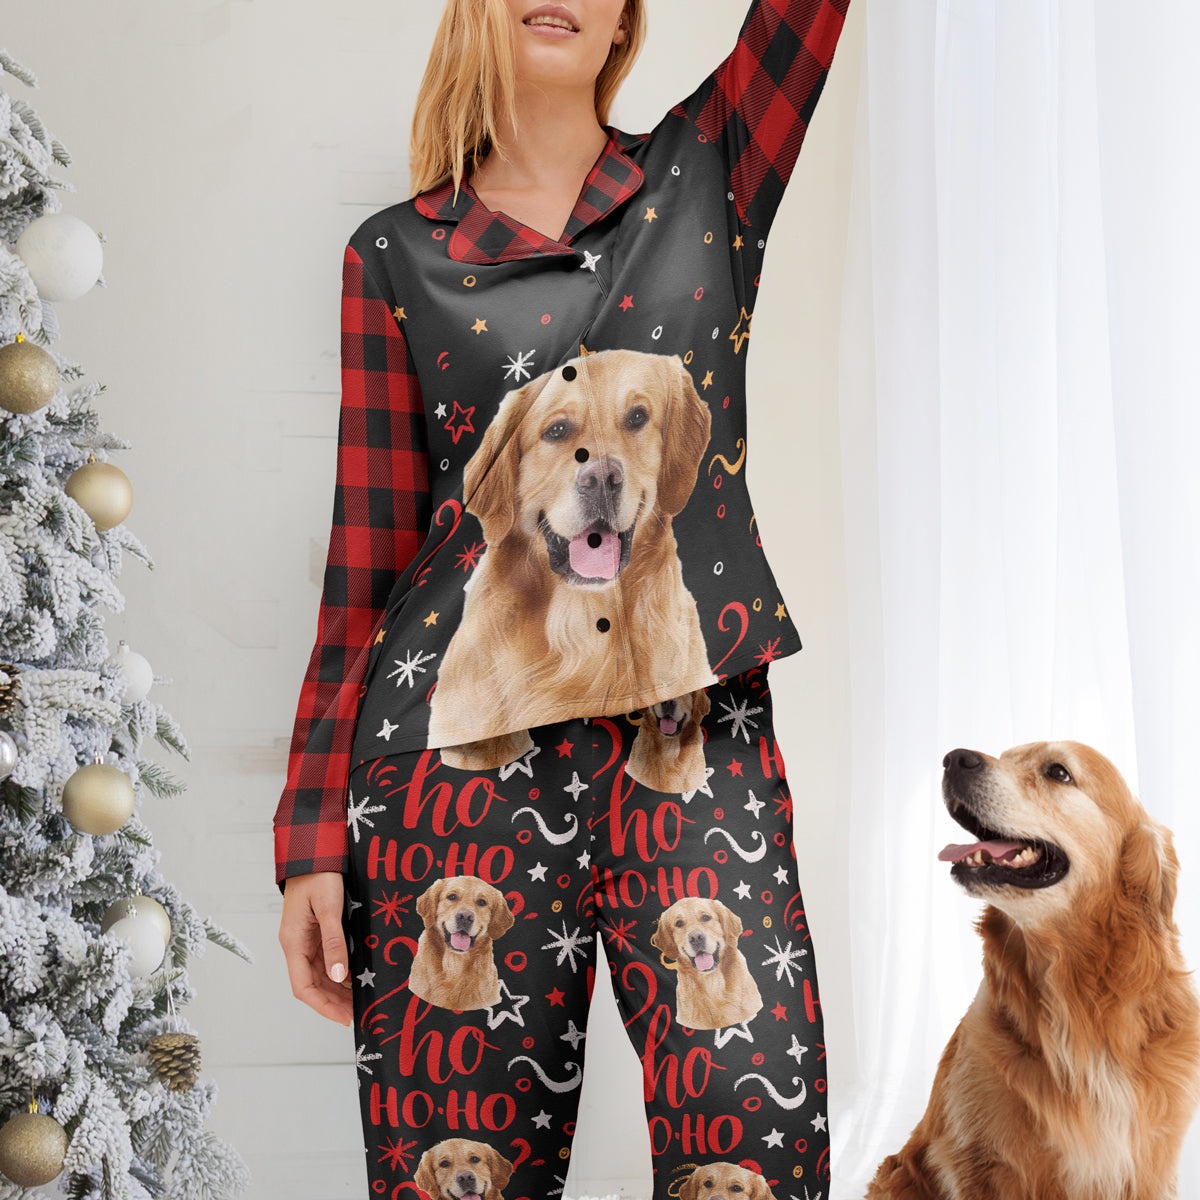 Christmas Pajamas - Personalized Photo Women's Pajamas Set - Plaid Pattern